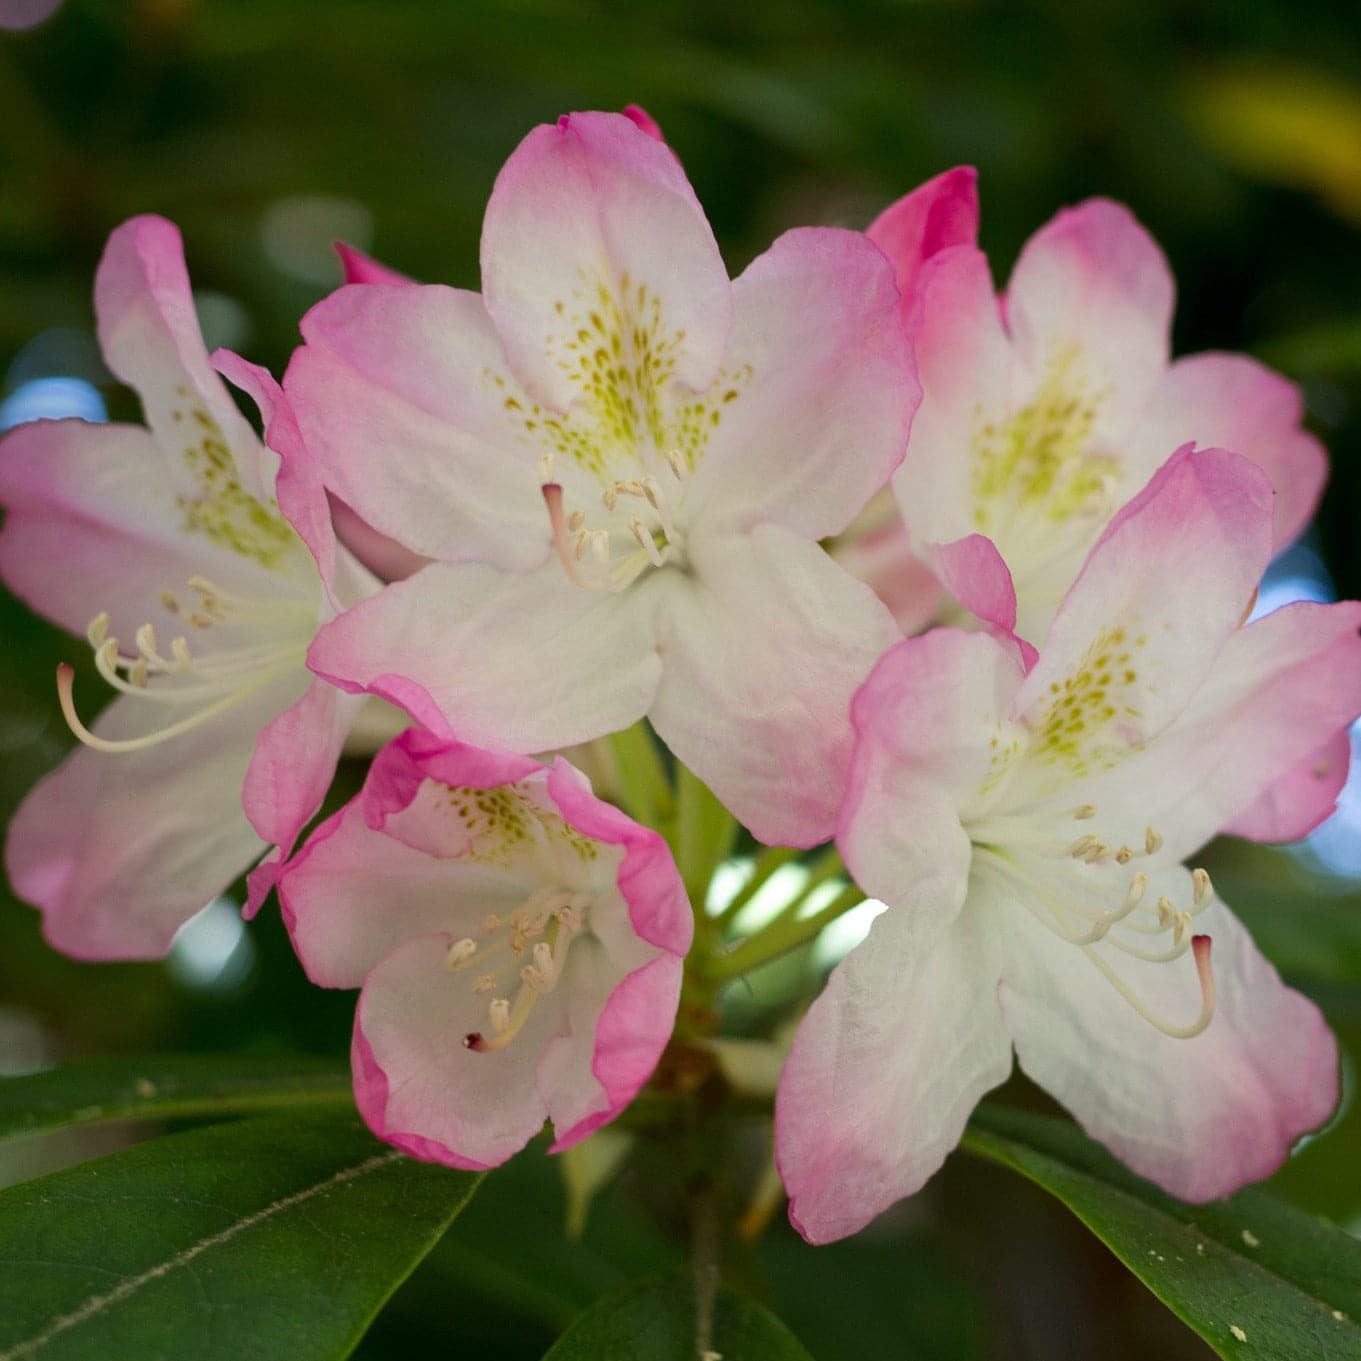 Rhododendron Lady Alice Fitzwilliam